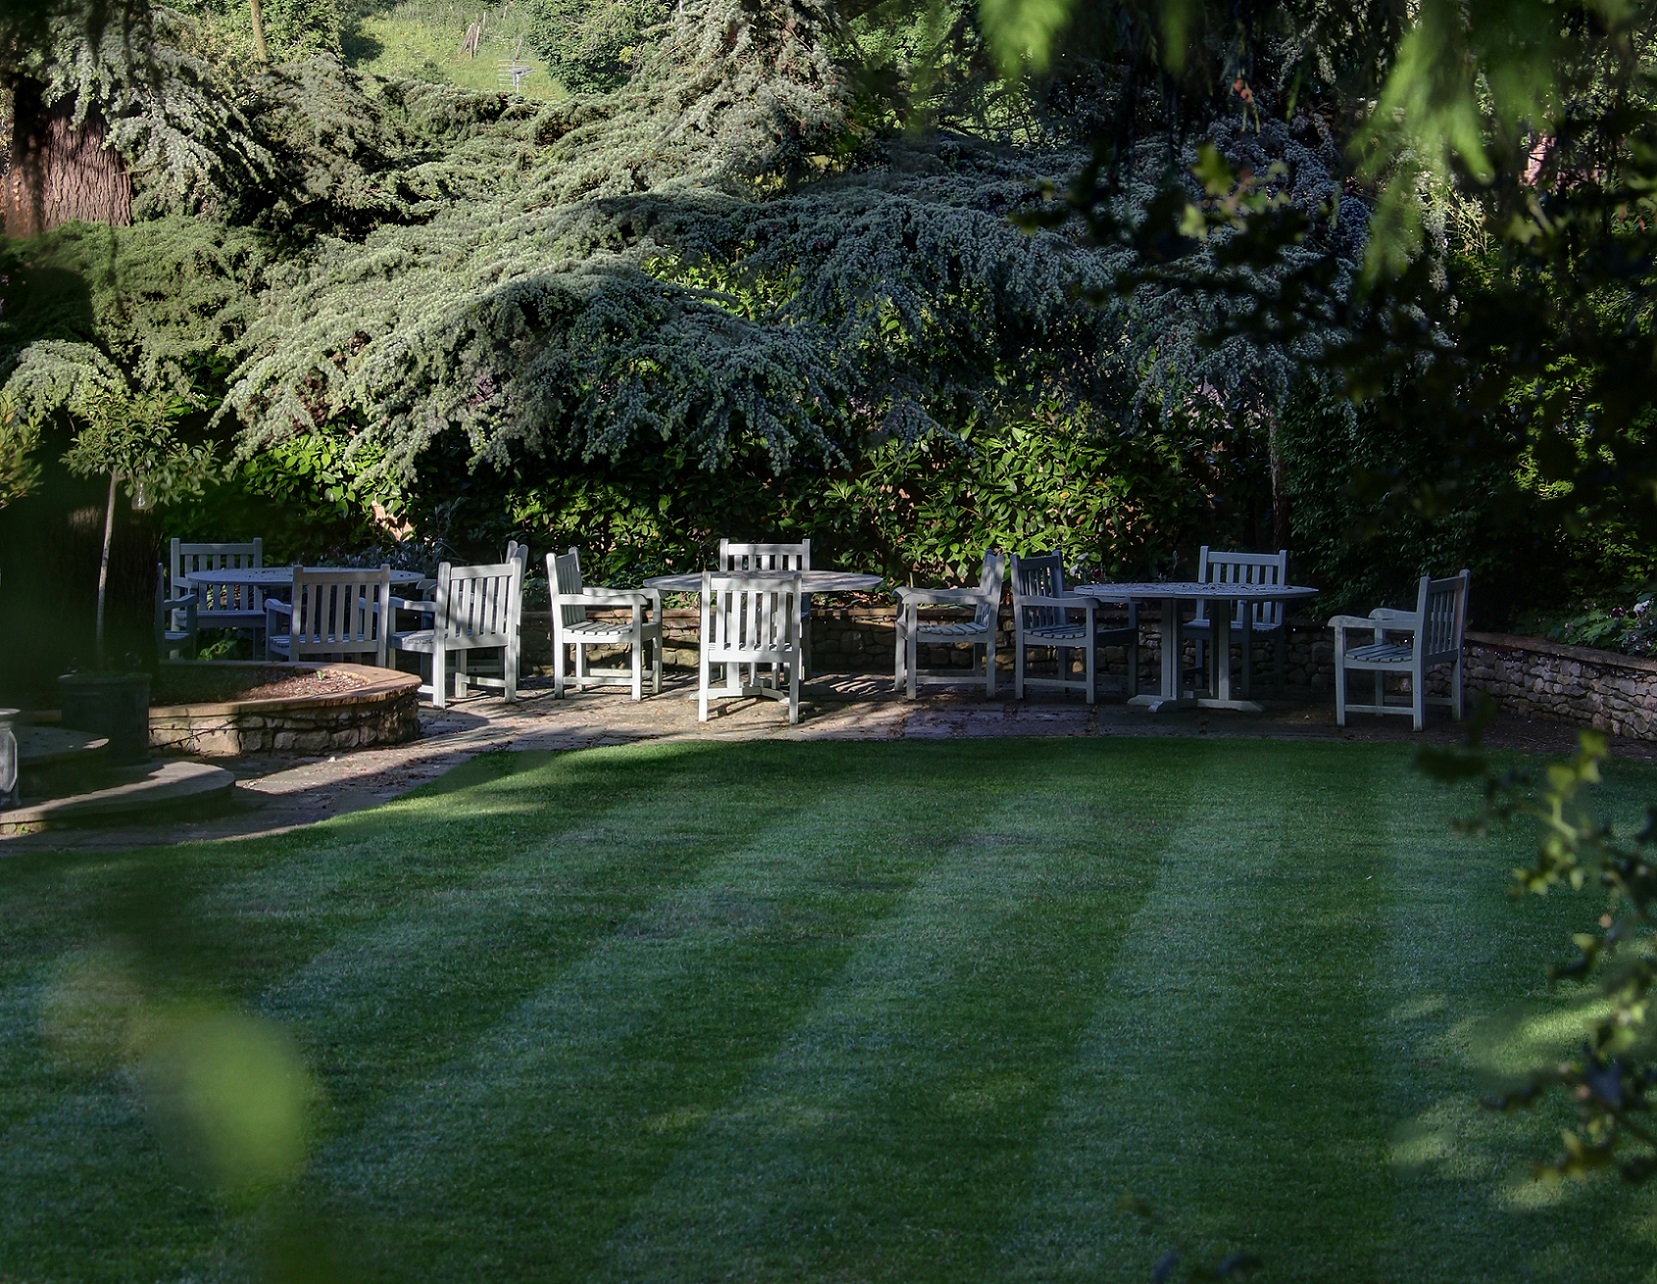 The Grange at Oborne gardens